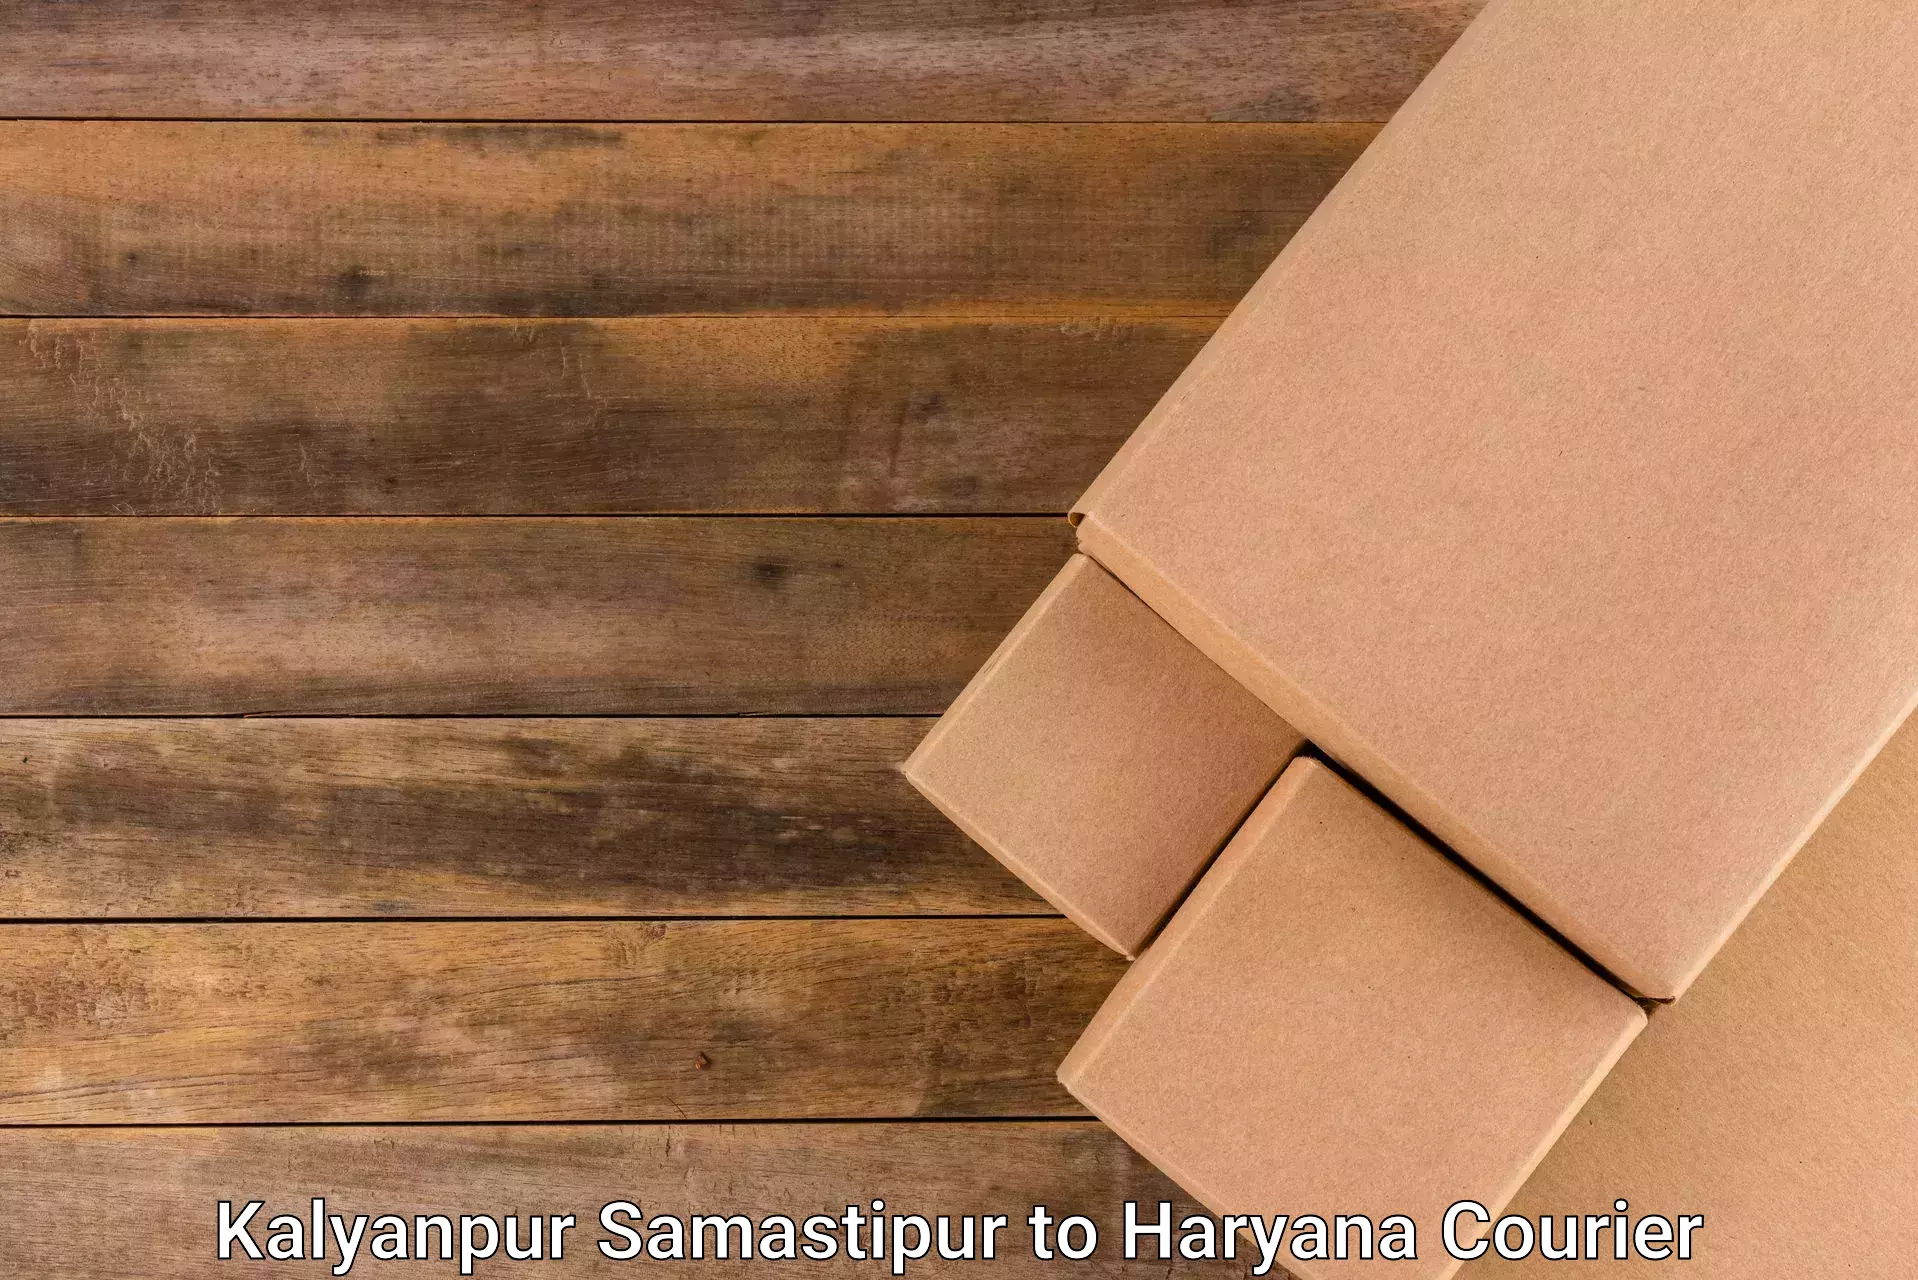 Next day courier Kalyanpur Samastipur to Bhuna